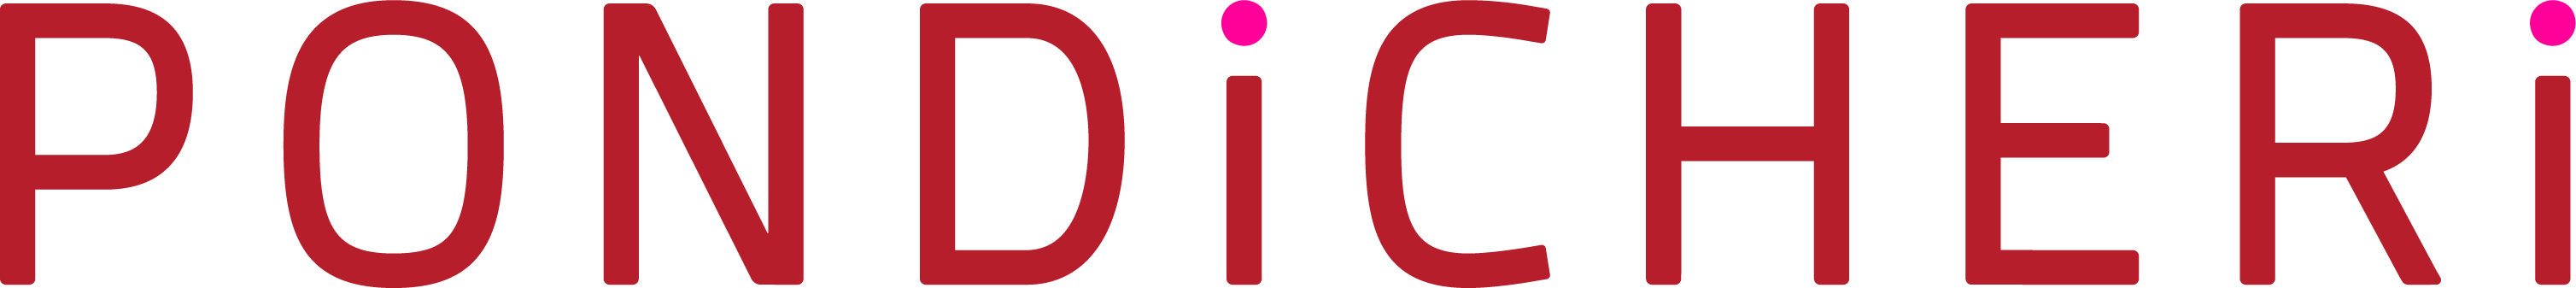 Pondicheri Logo